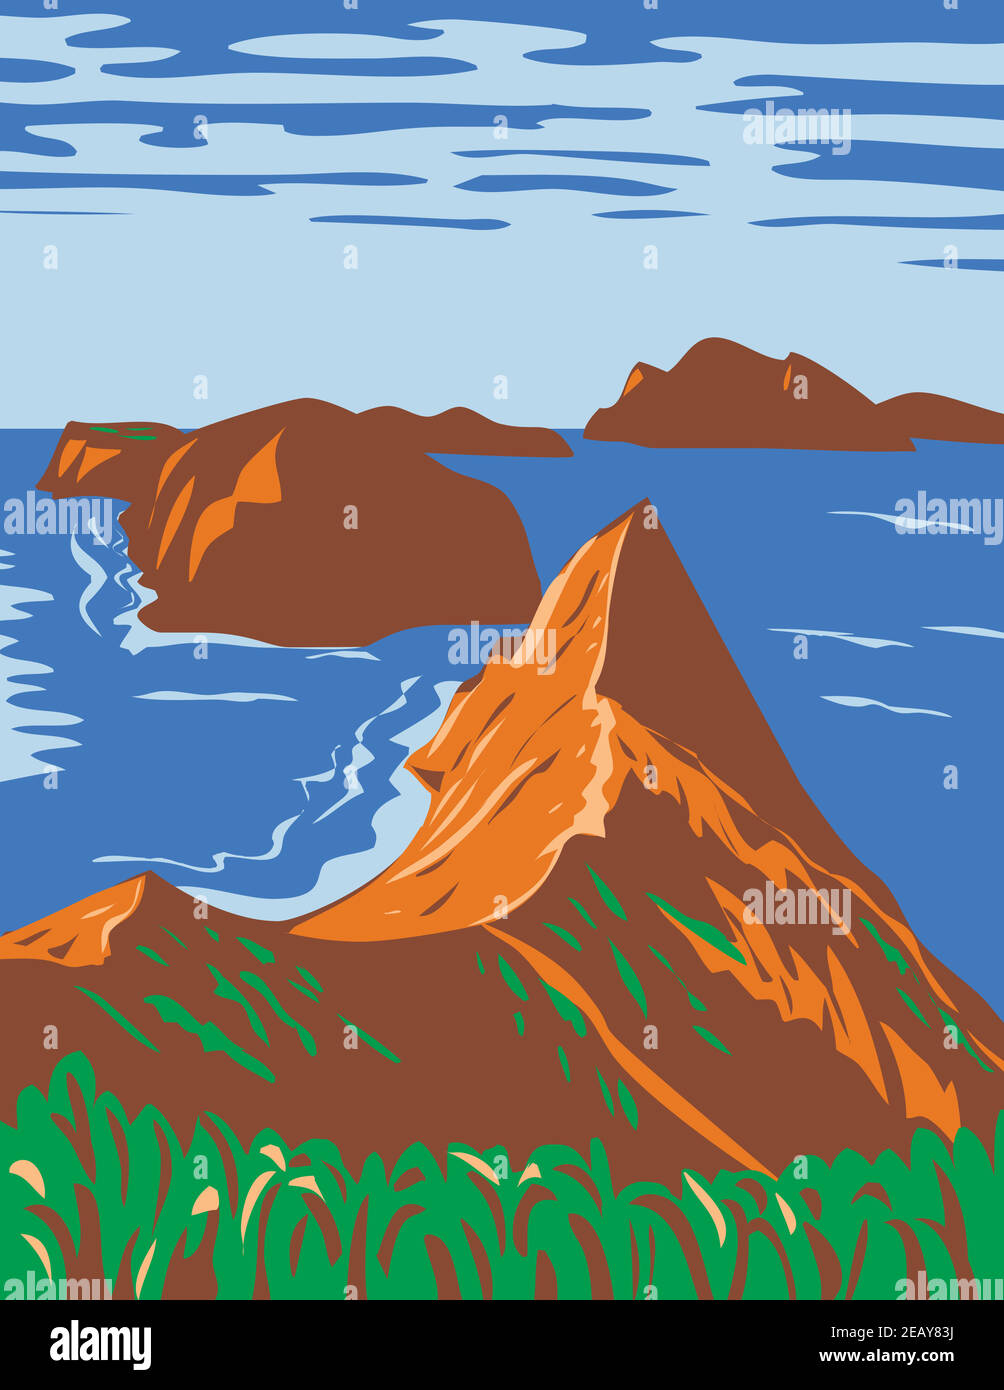 L'art de l'affiche WPA du parc national des îles Anglo-Normandes comprend 5 îles écologiquement riches au large de la côte sud de la Californie Etats-Unis administrateur de projet in works Illustration de Vecteur